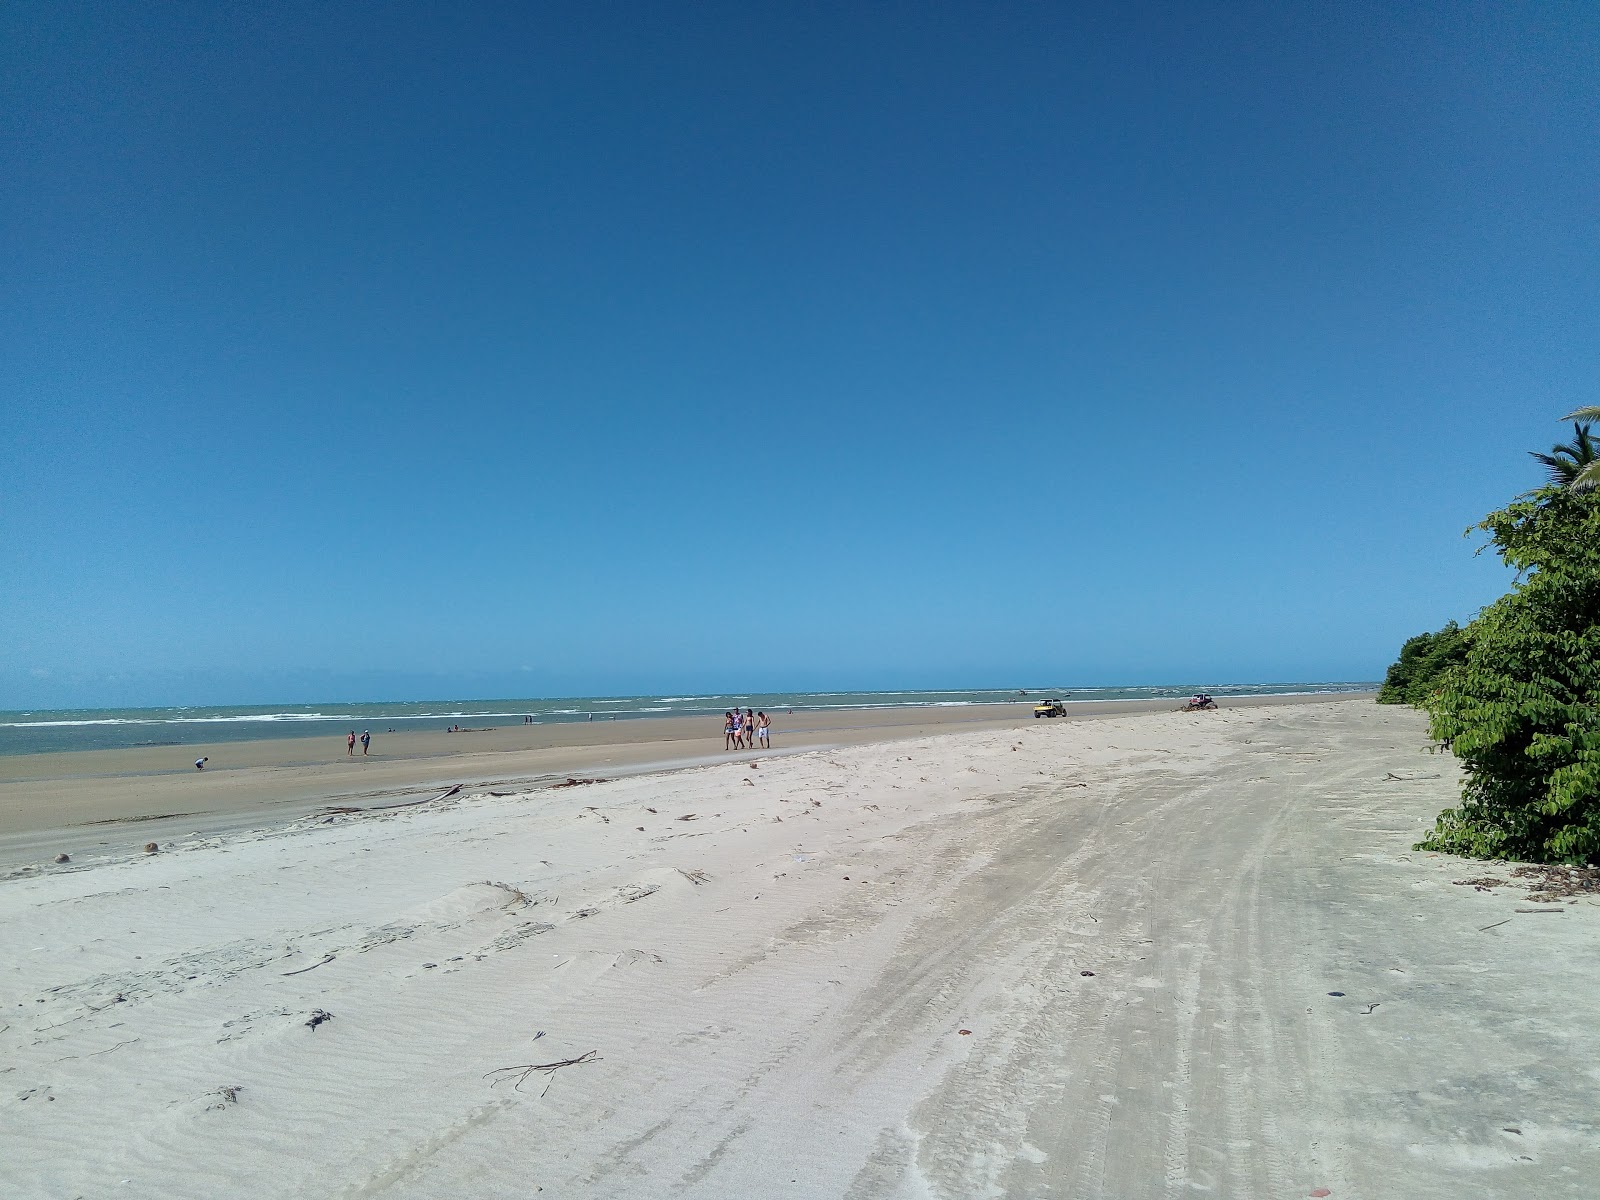 Praia da Baleia'in fotoğrafı parlak kum yüzey ile